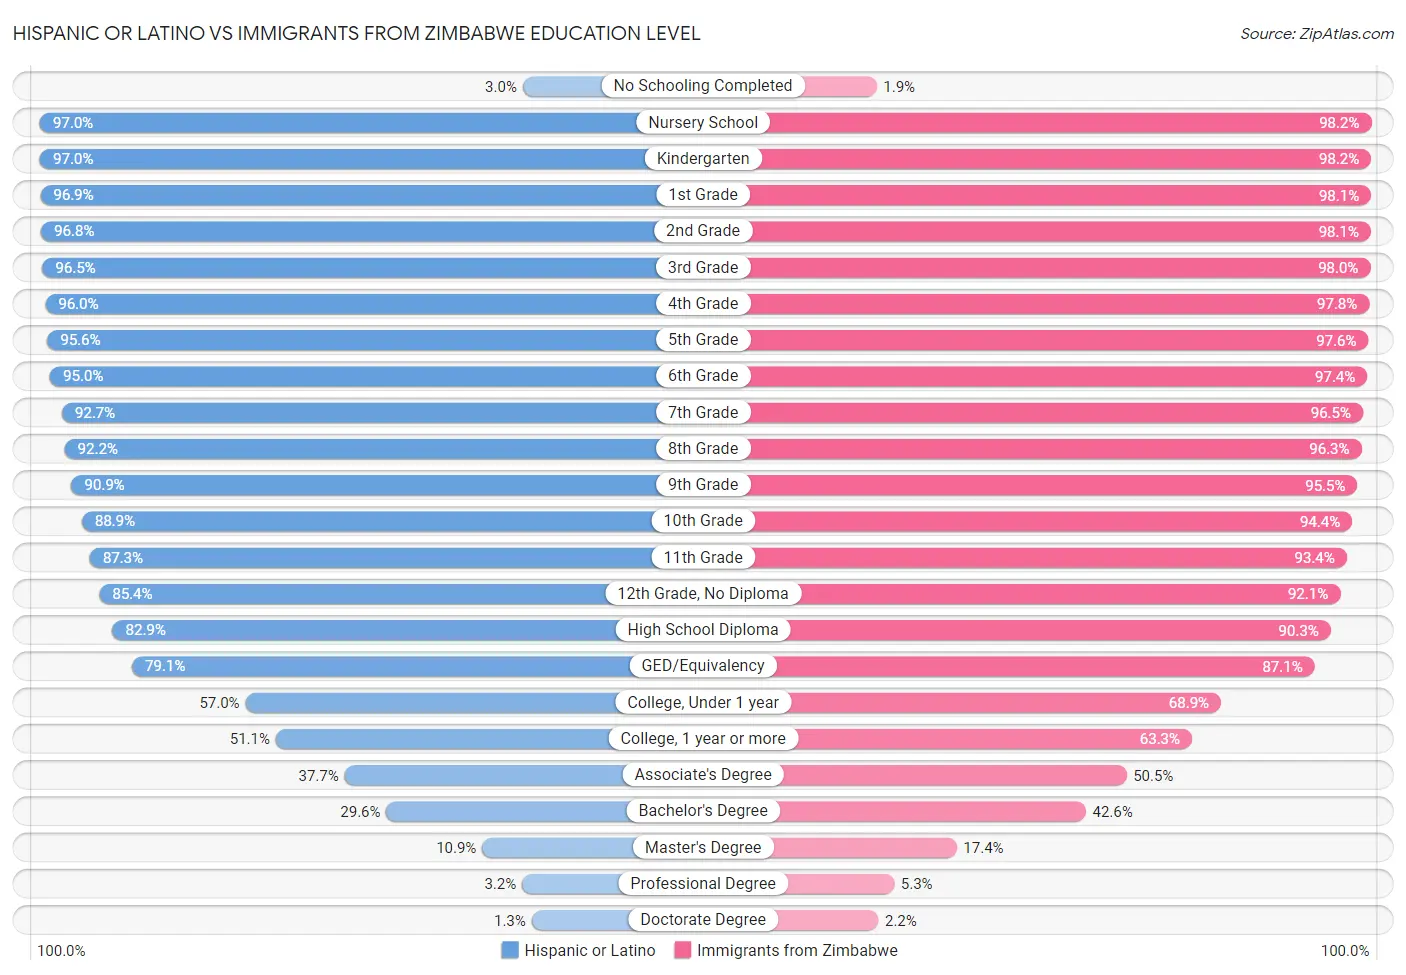 Hispanic or Latino vs Immigrants from Zimbabwe Education Level